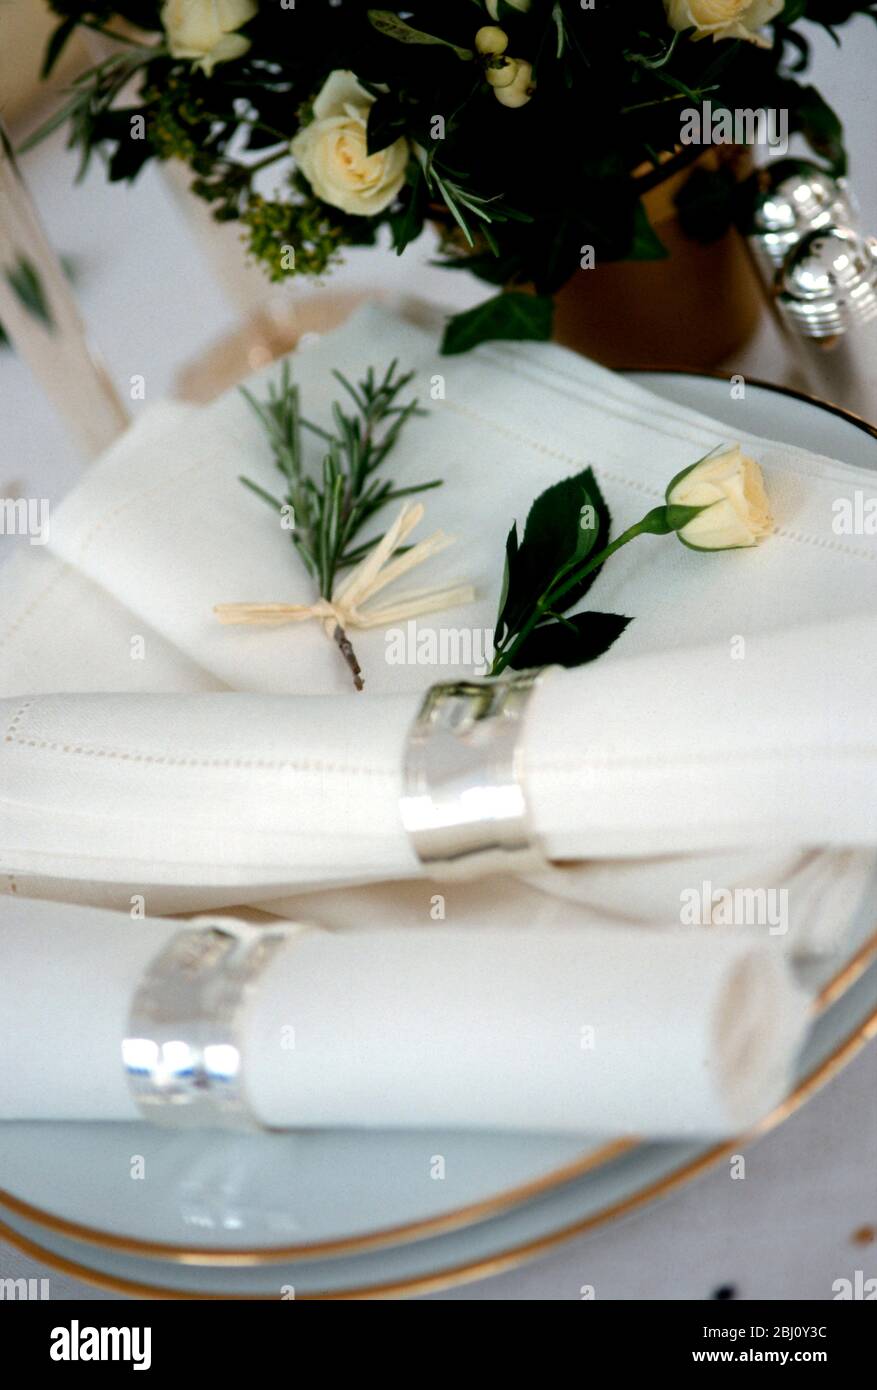 Serviettes en argent avec boutons-pression et plaques à bords dorés, prêtes à être mises en place pour le cadre de table de mariage - Banque D'Images